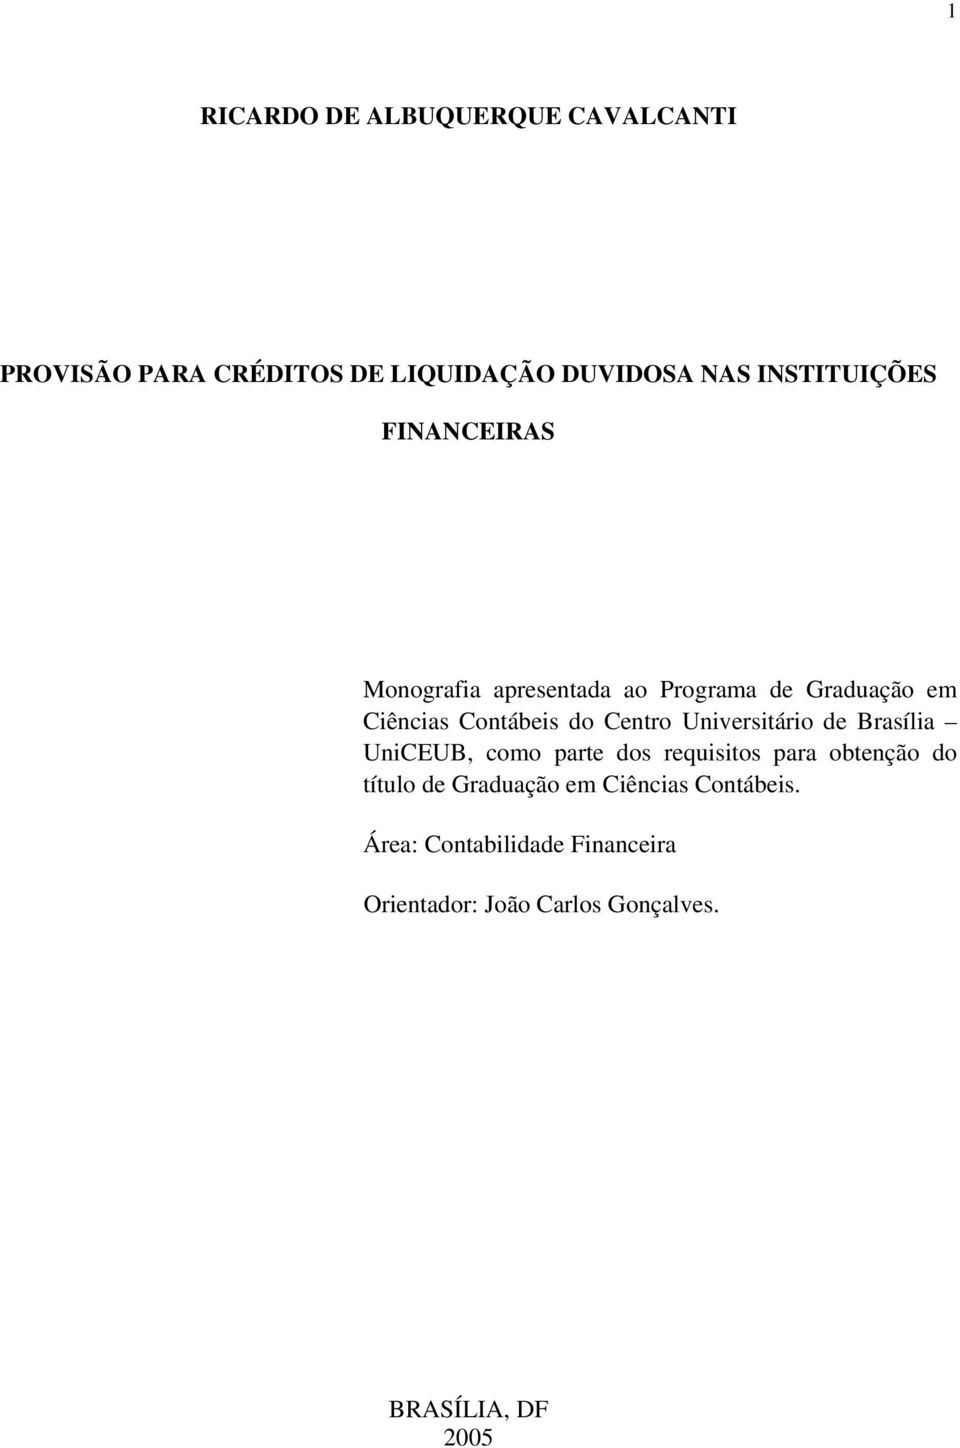 Universitário de Brasília UniCEUB, como parte dos requisitos para obtenção do título de Graduação